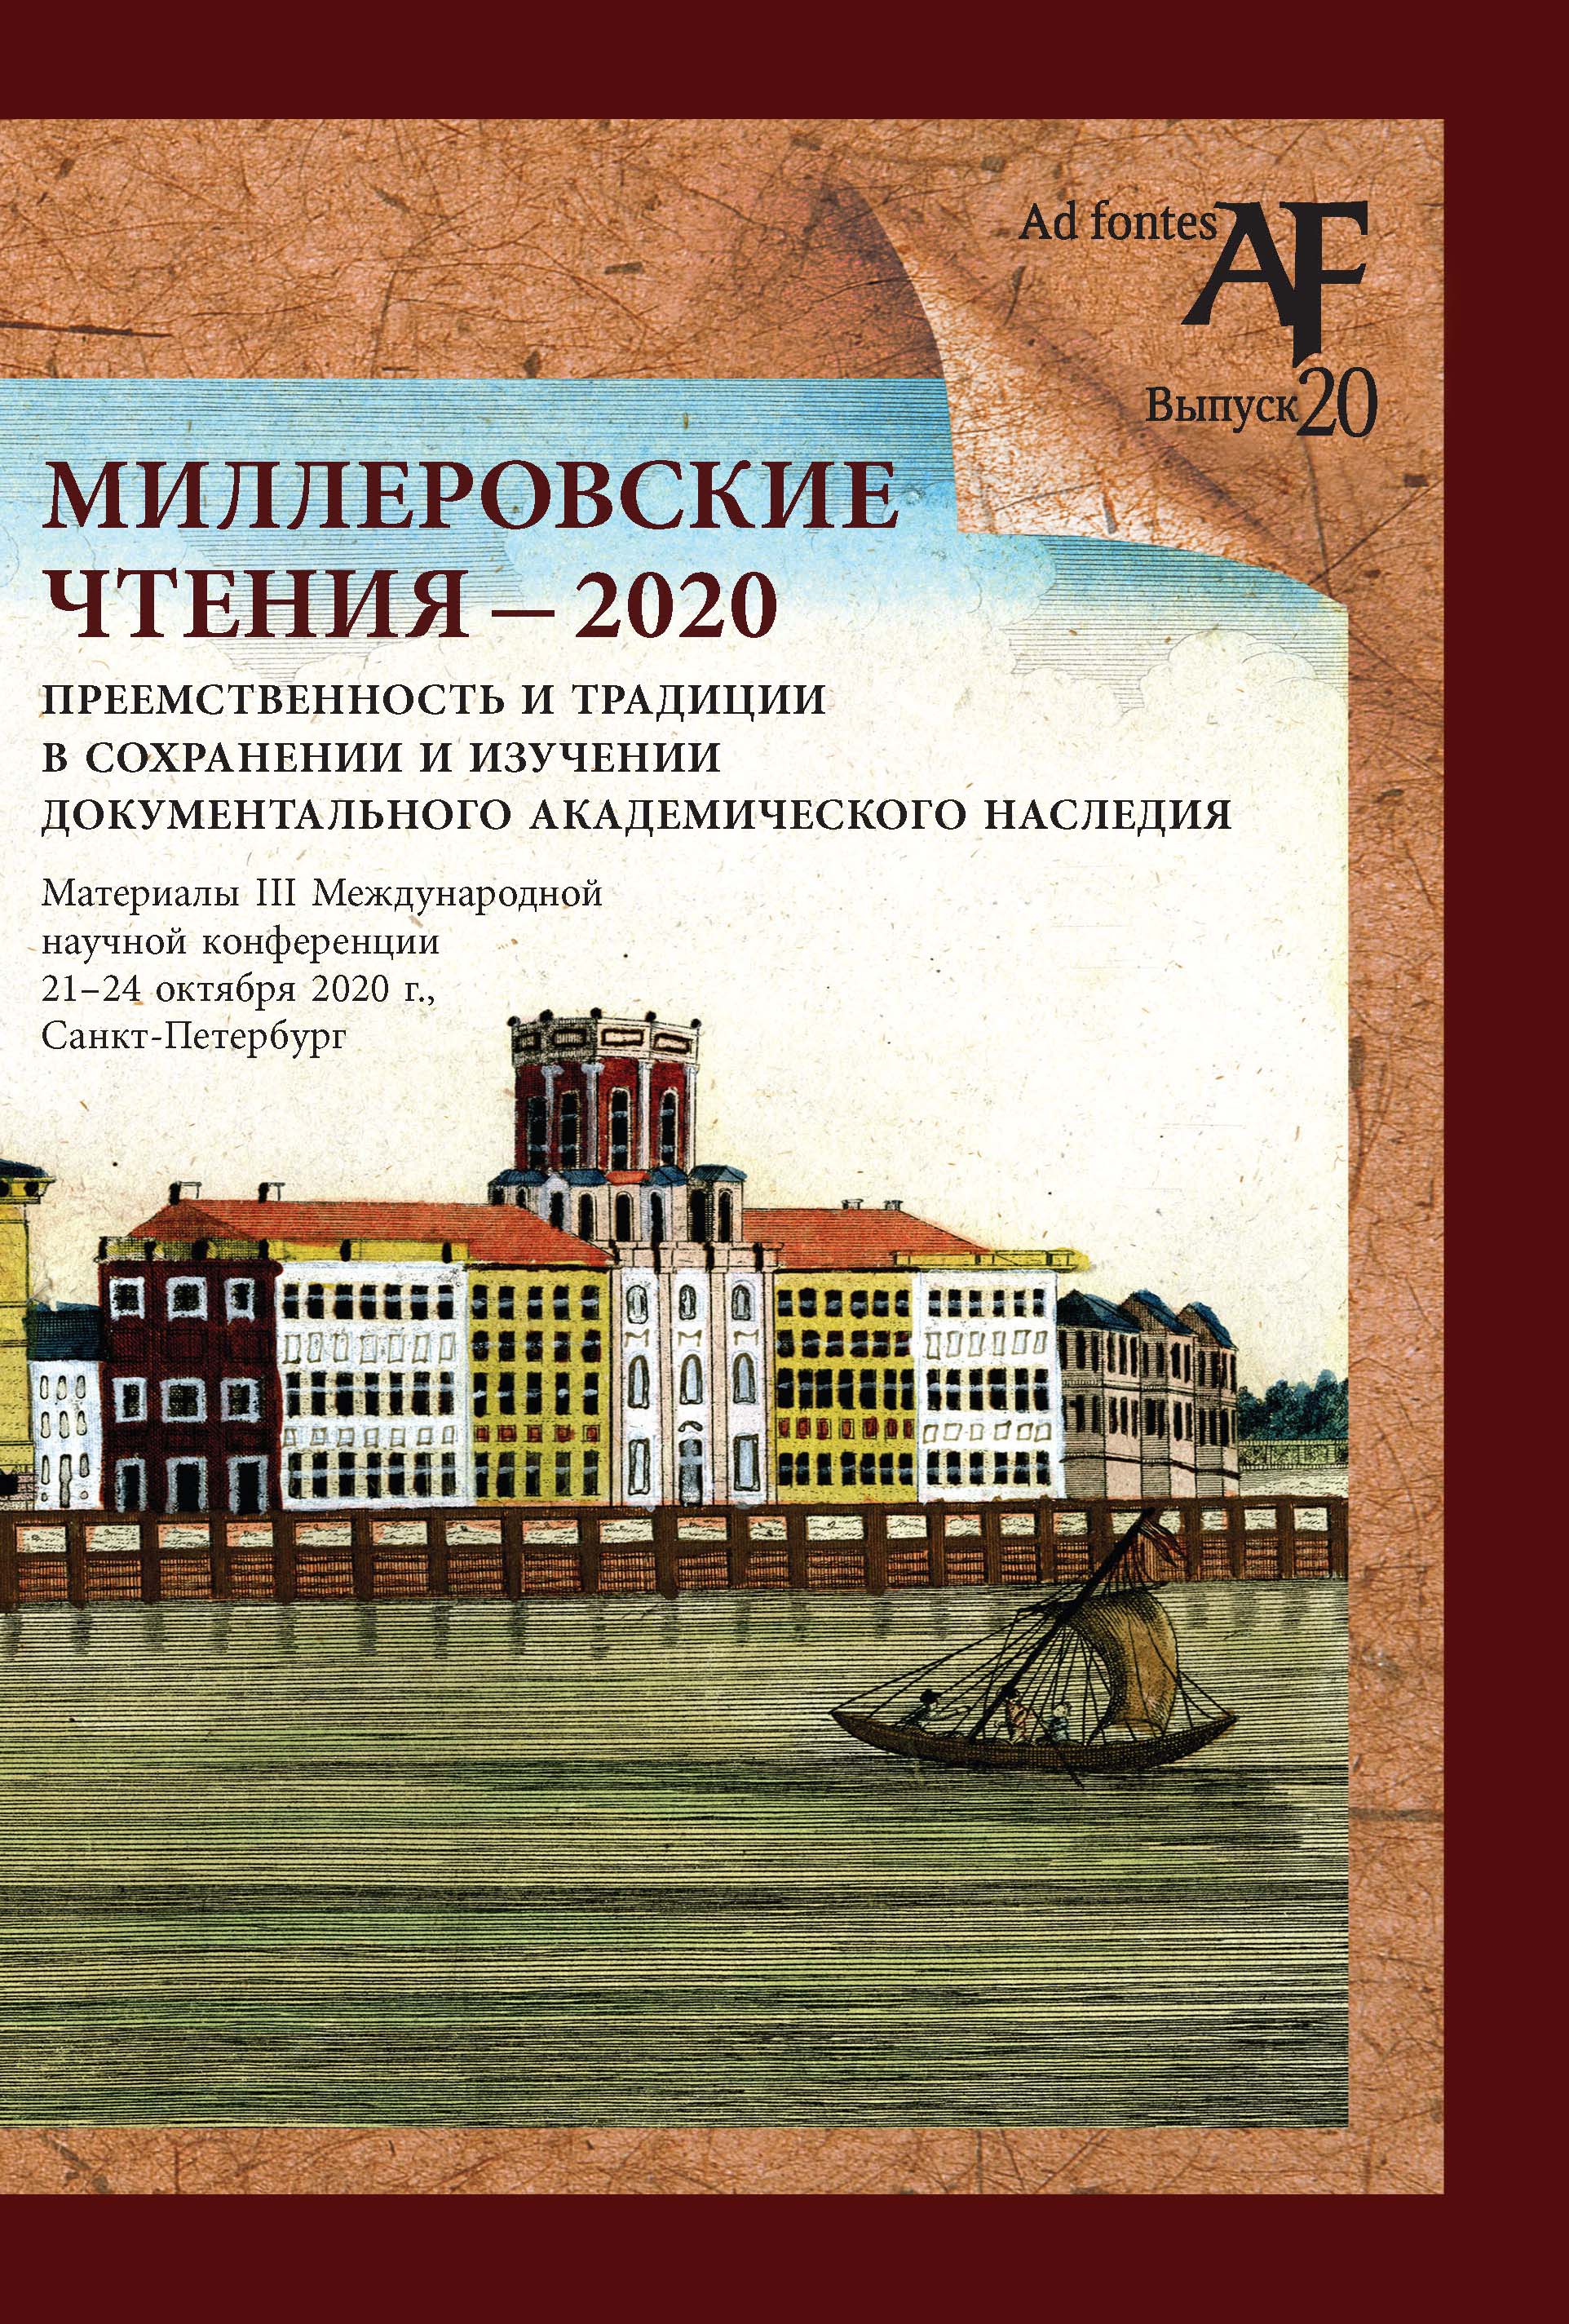 Миллеровские чтения - 2020: приемственность и традиции в сохранении и изучении документального академического наследия